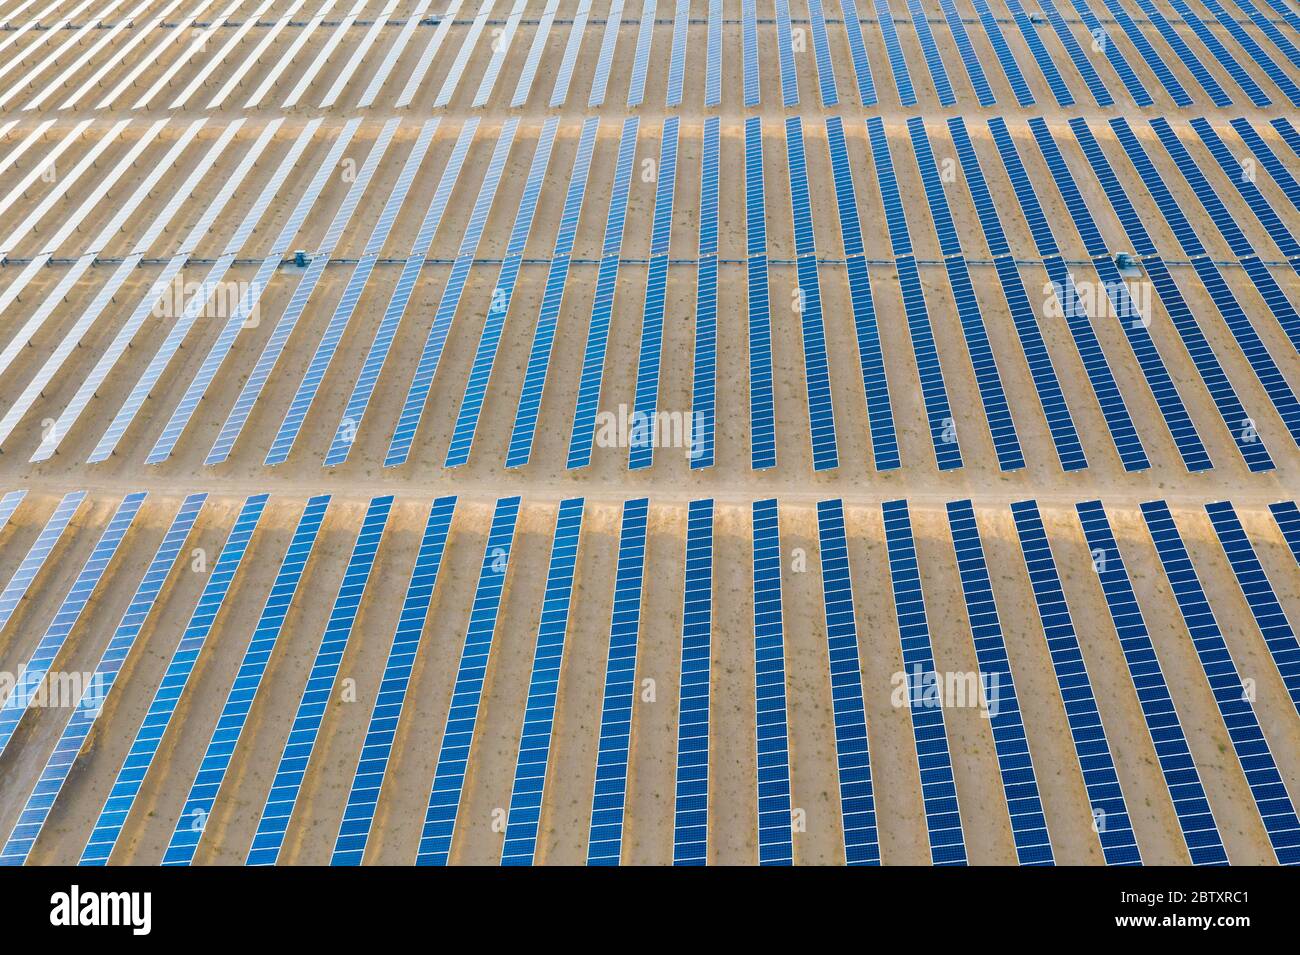 Vue aérienne d'une ferme de panneaux solaires photovoltaïques produisant une énergie renouvelable durable dans une centrale électrique désertique. Banque D'Images